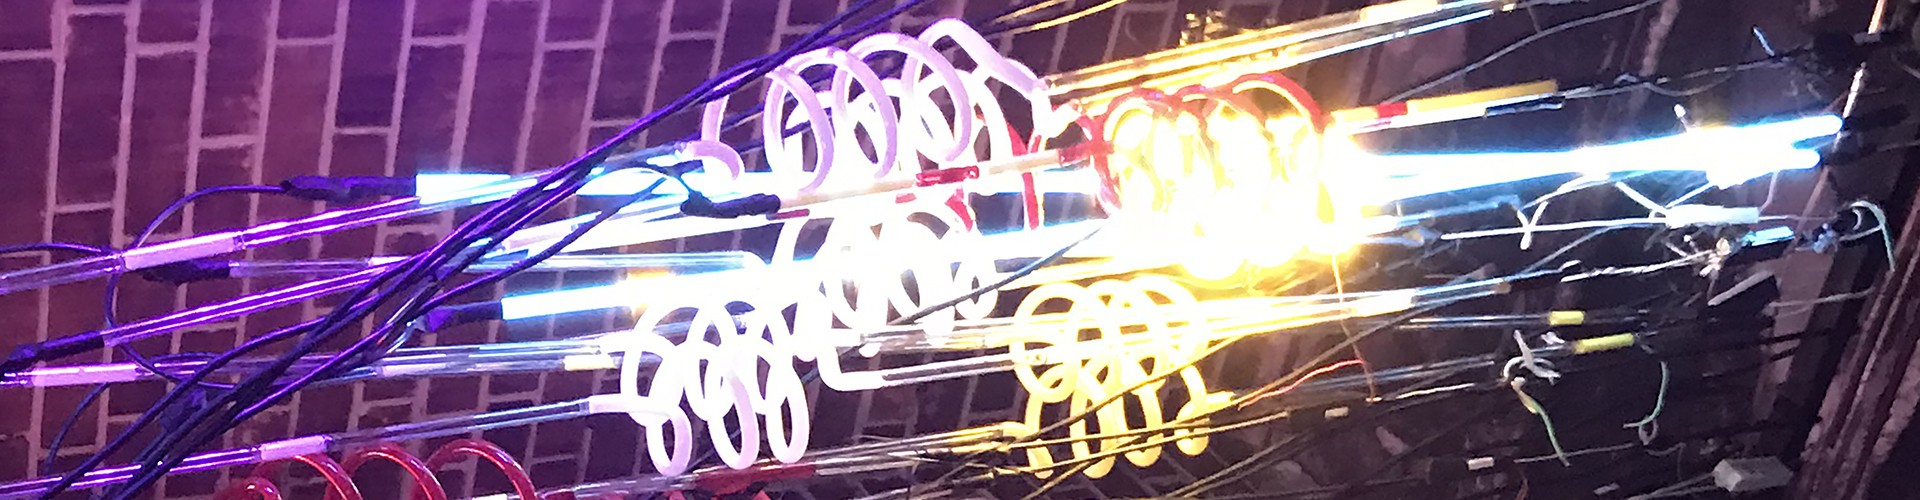 neon tubes for dix park experiment